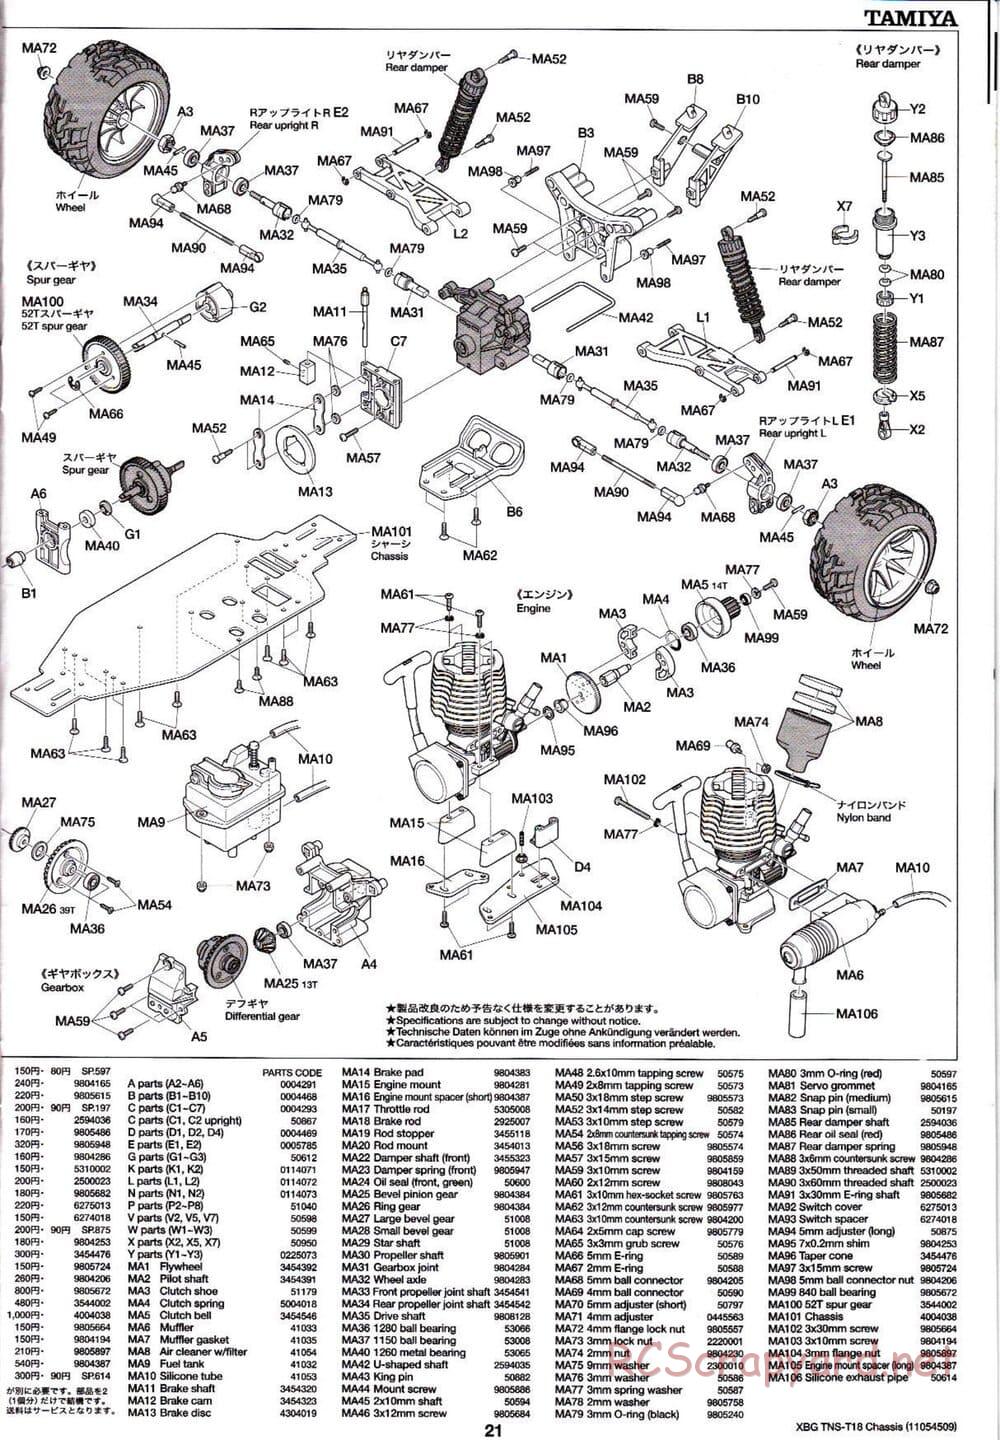 Tamiya - TNS-T18 Chassis - Manual - Page 21